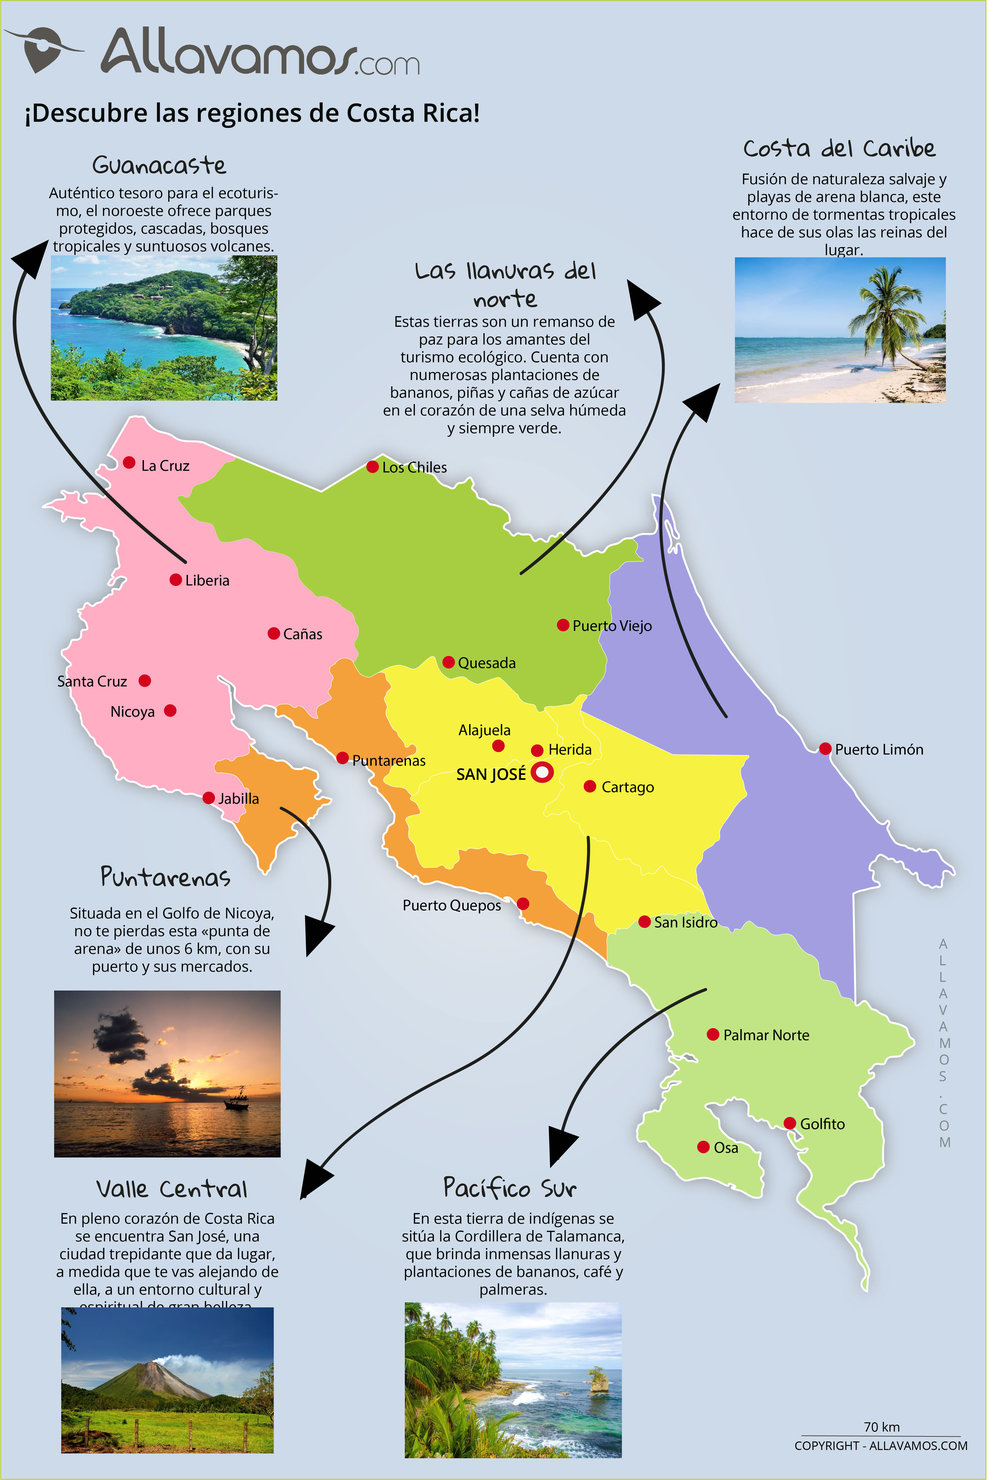 Qué ver en Costa Rica: mapas turísticos y lugares que no te puedes perder